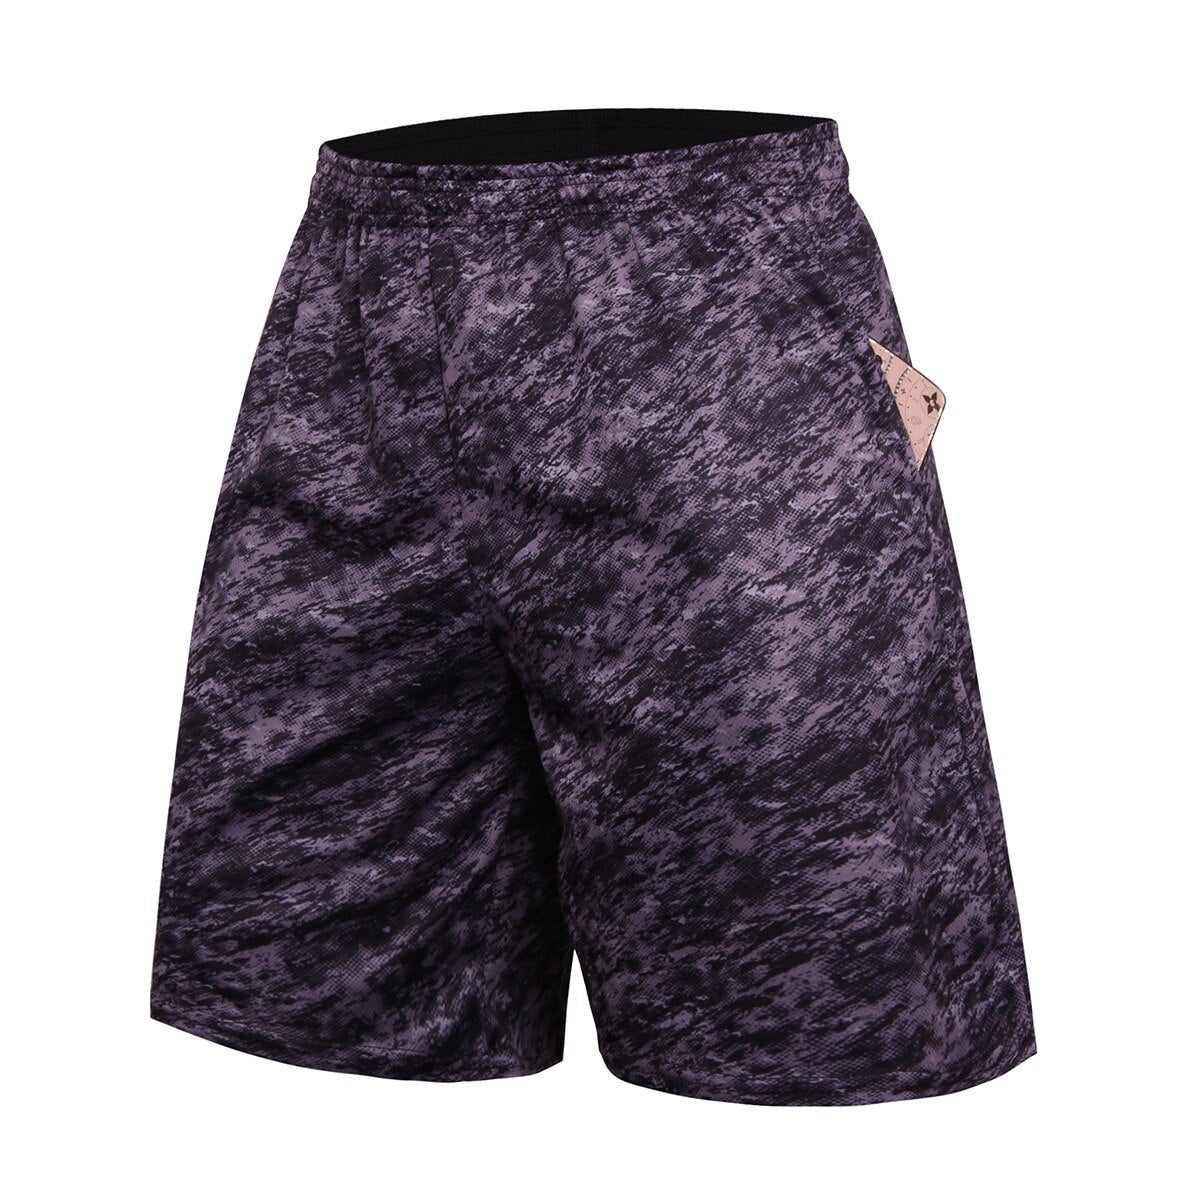 Running Quick Dry Elastic Shorts - DromedarShop.com Online Boutique